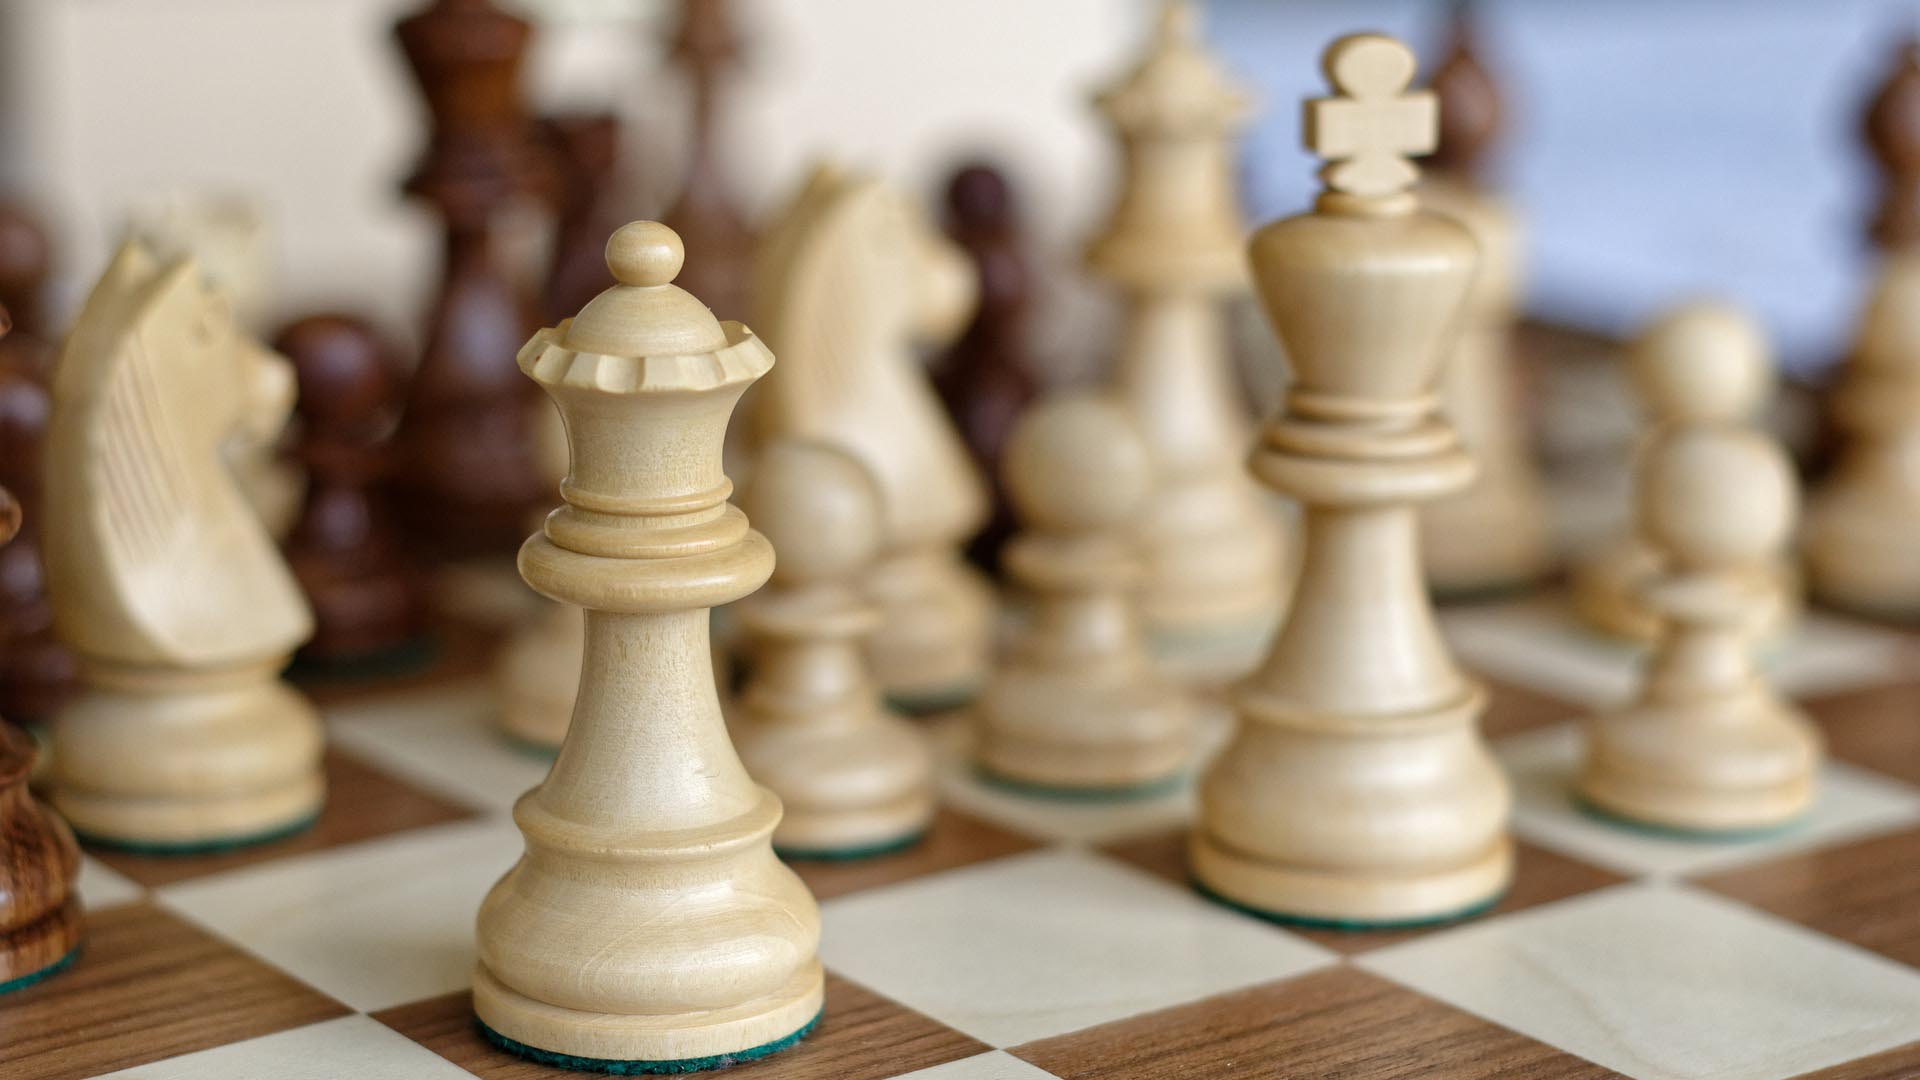 Schachspiel, auf dem Schachfiguren aufgestellt sind